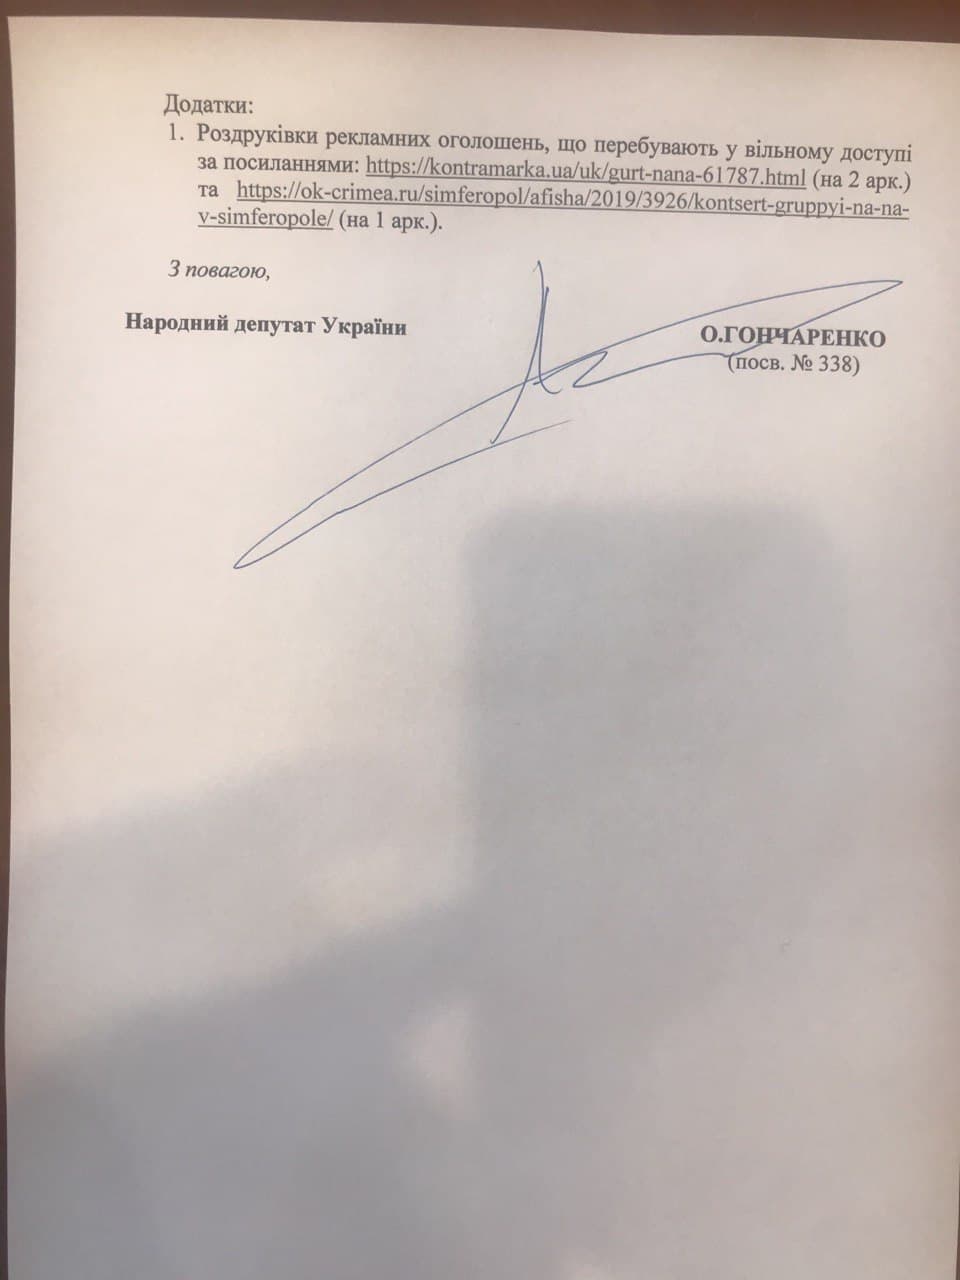 Нардеп от партии Порошенко обратился в СБУ из-за грядущего концерта "На-На" в Киеве. Ранее они посещали Крым